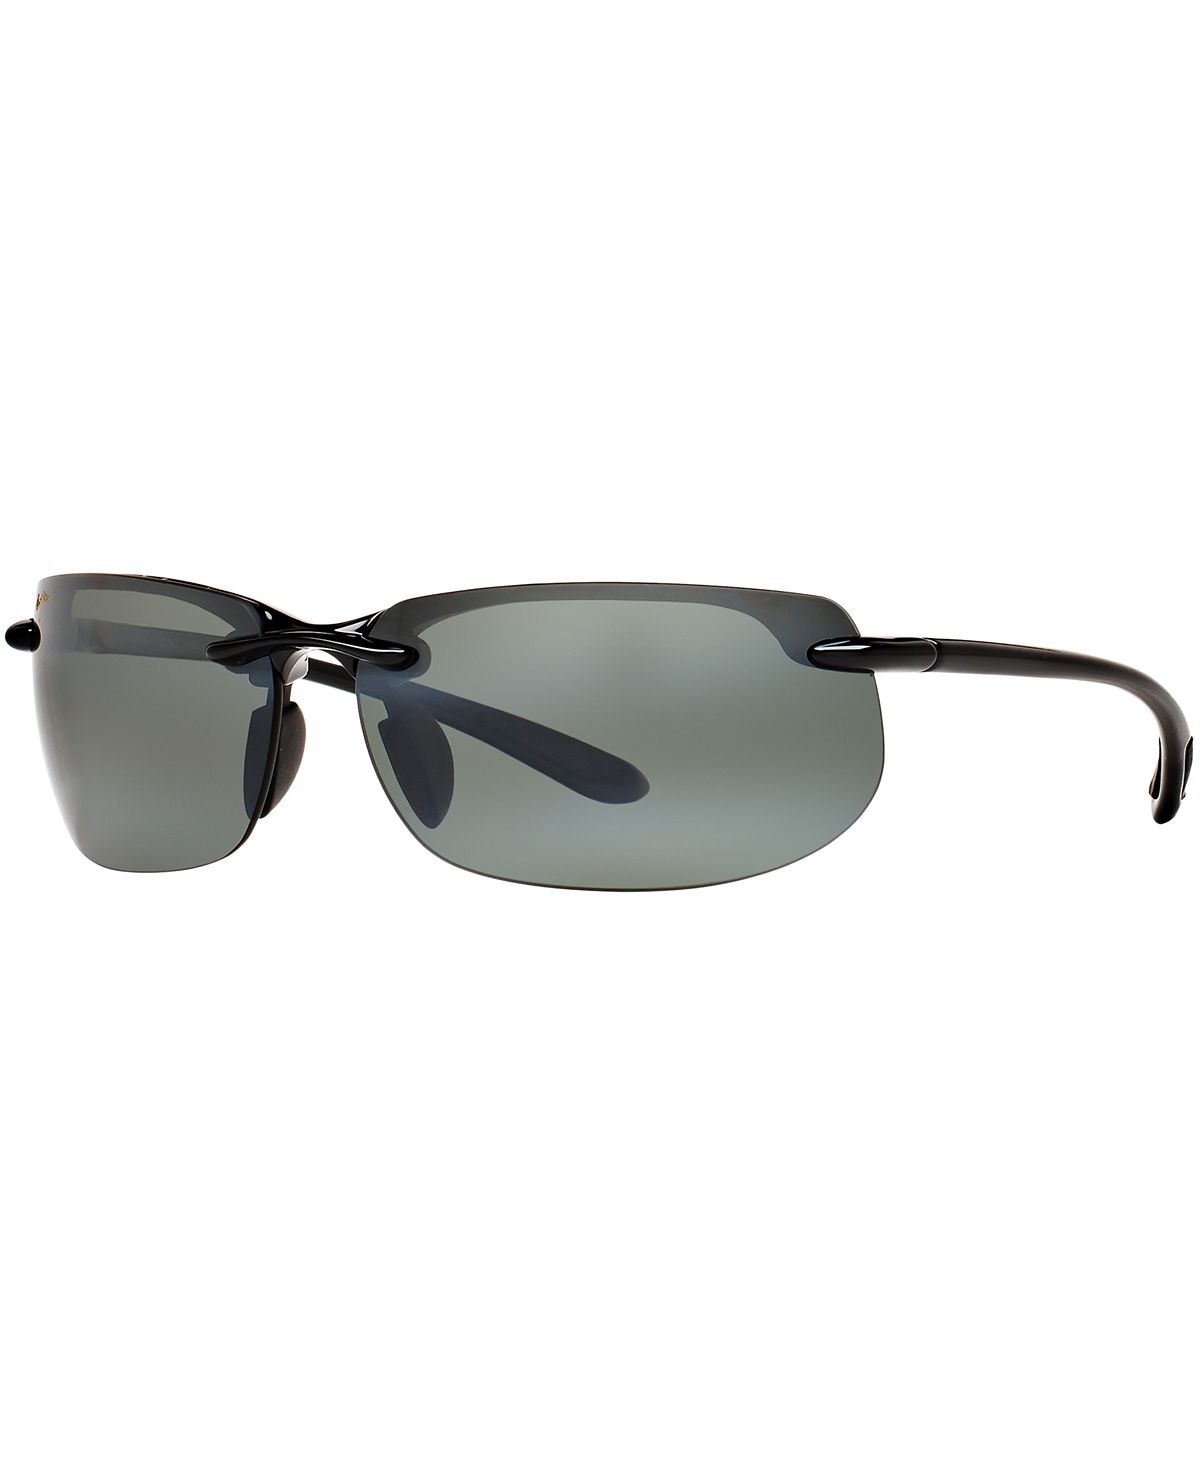 Поляризованные солнцезащитные очки Banyans, 412 Maui Jim